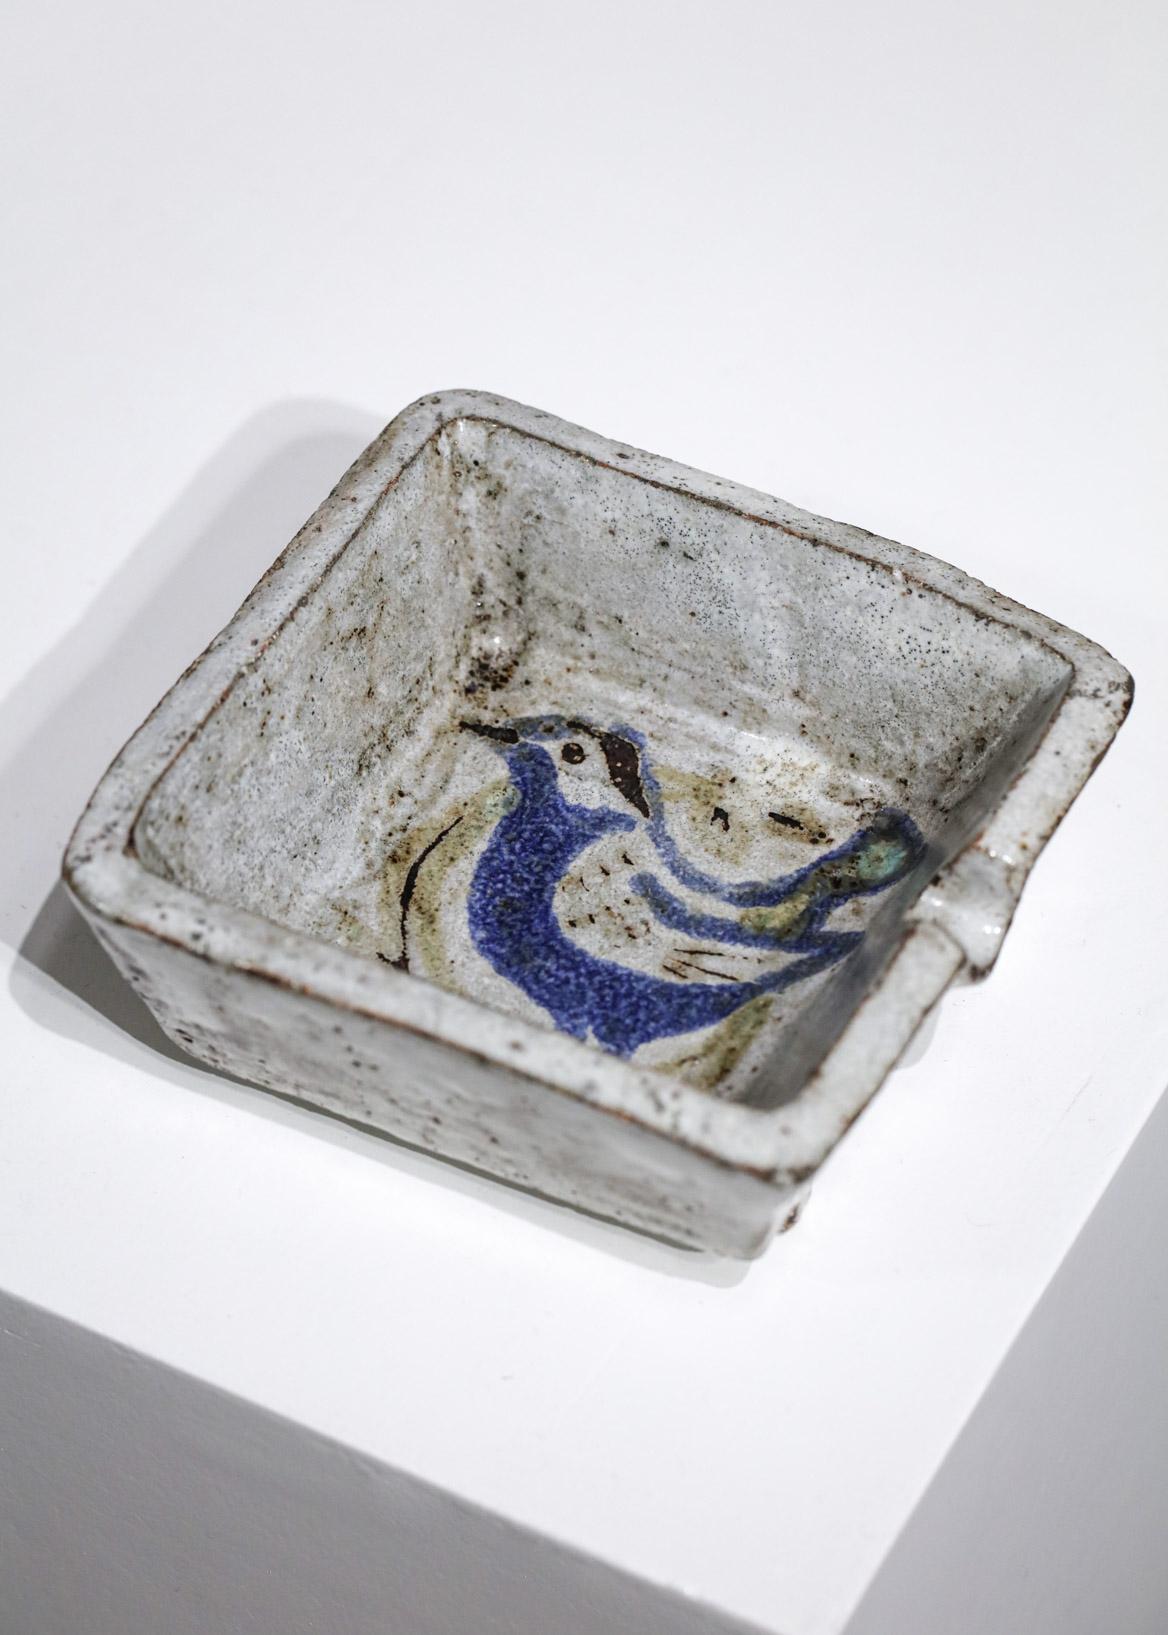 Quadratischer Aschenbecher aus den 50er Jahren von dem französischen Keramiker Jean Derval aus Vallauris. Sehr schöne Glasur auf dem gesamten Aschenbecher mit einer stilisierten Zeichnung eines Vogels in der Mitte. Signatur des Künstlers auf der